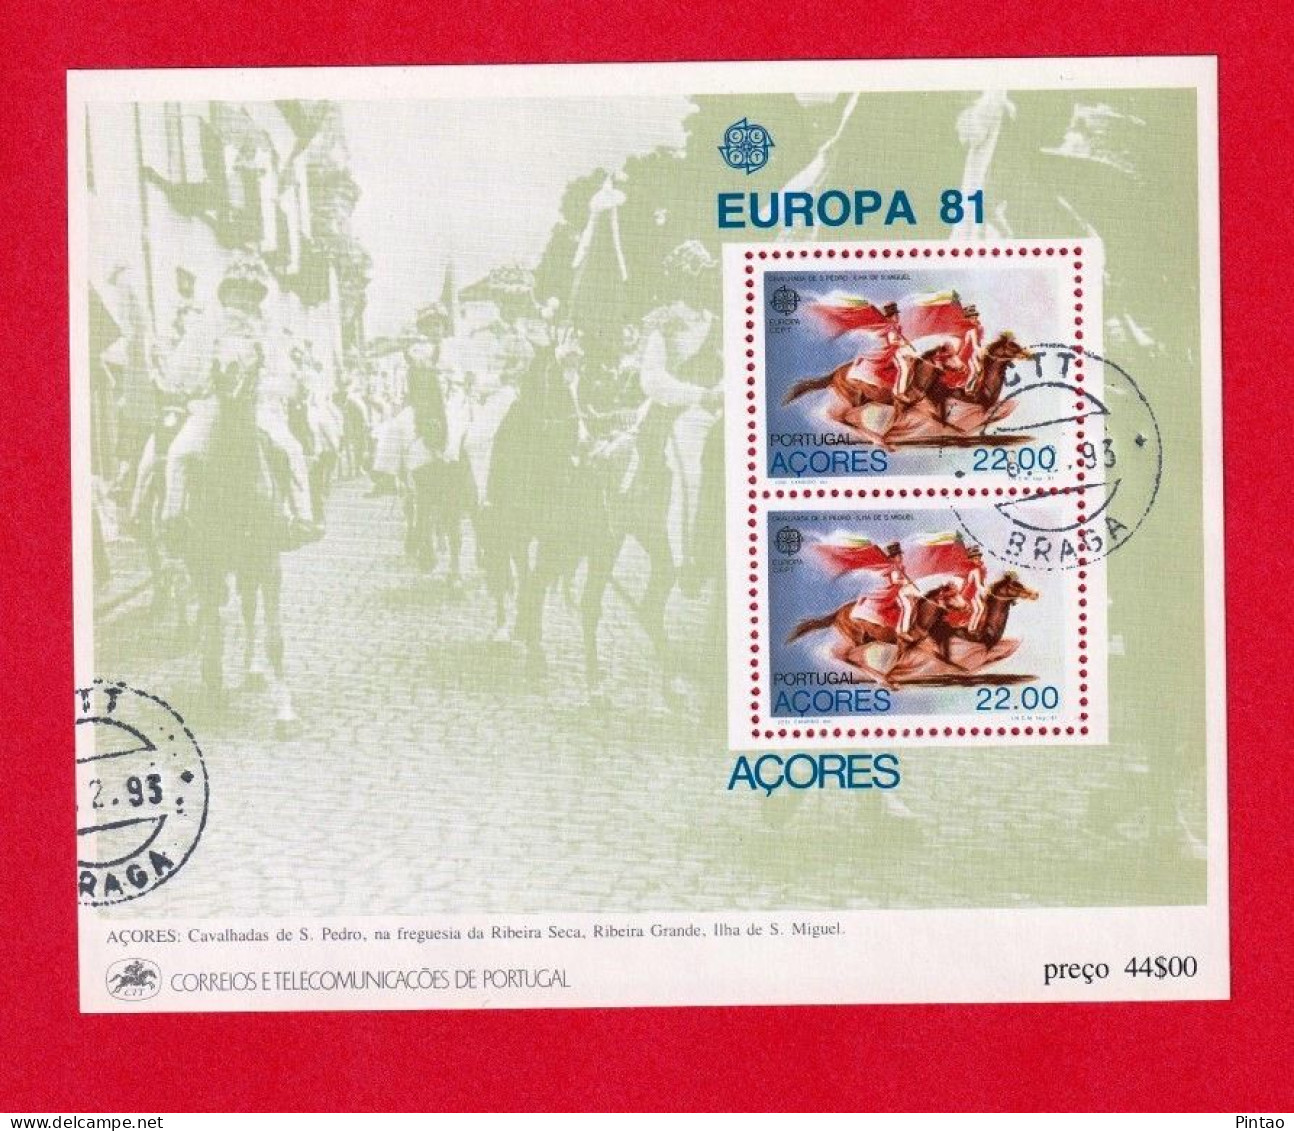 PTB1602- PORTUGAL 1981 BLOCO 36 (selo 1521)- USD_ EUROPA CEPT - 1981